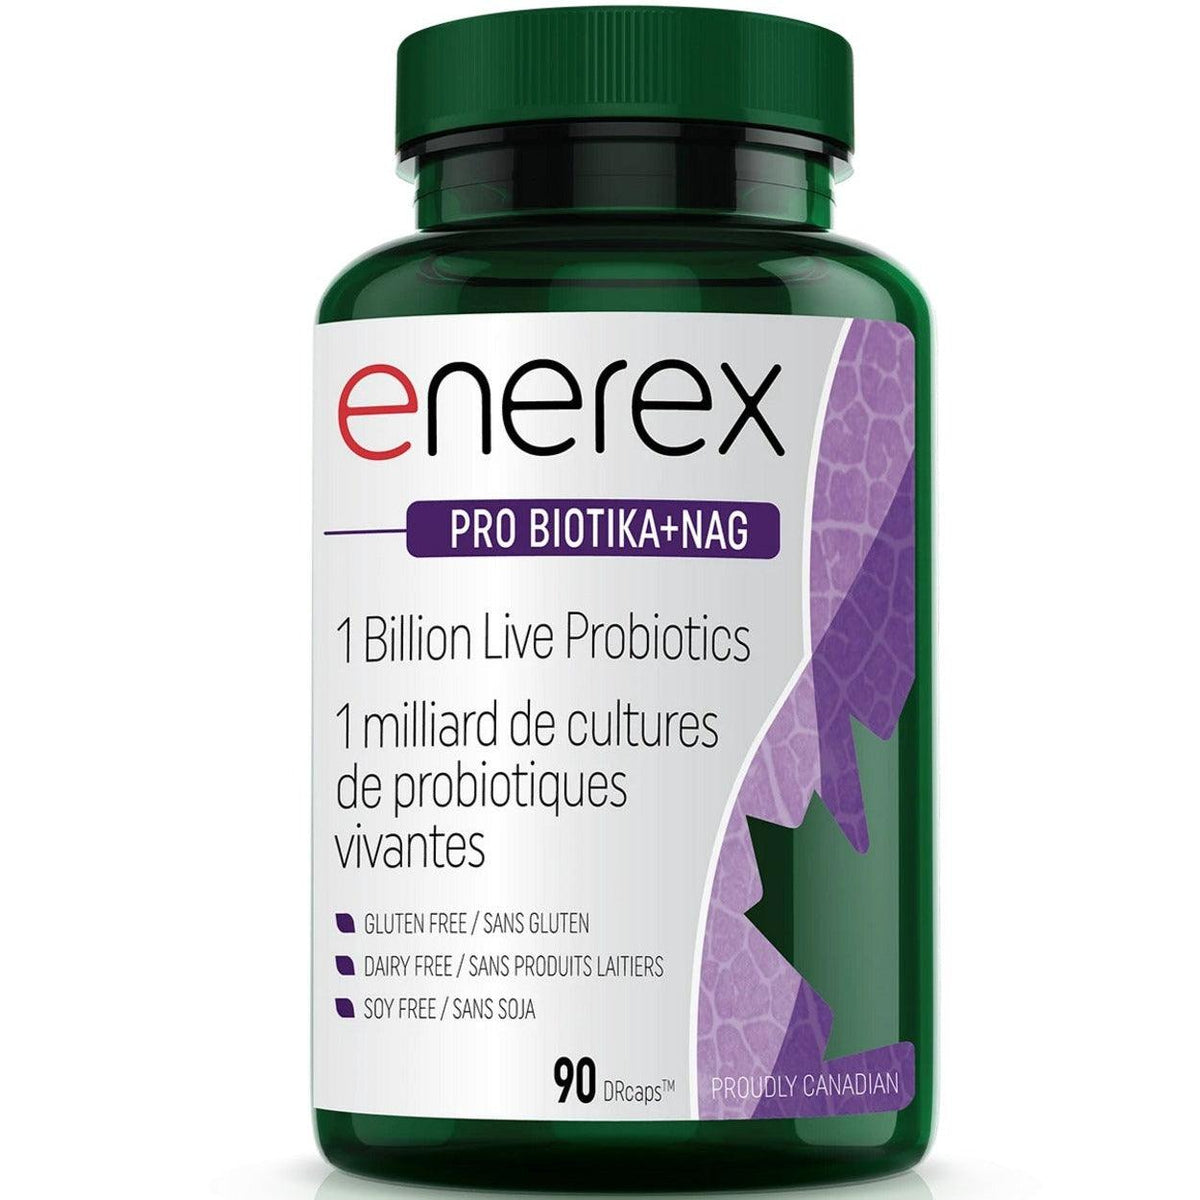 Enerex Pro Biotika + Nag 90 Caps Supplements - Probiotics at Village Vitamin Store